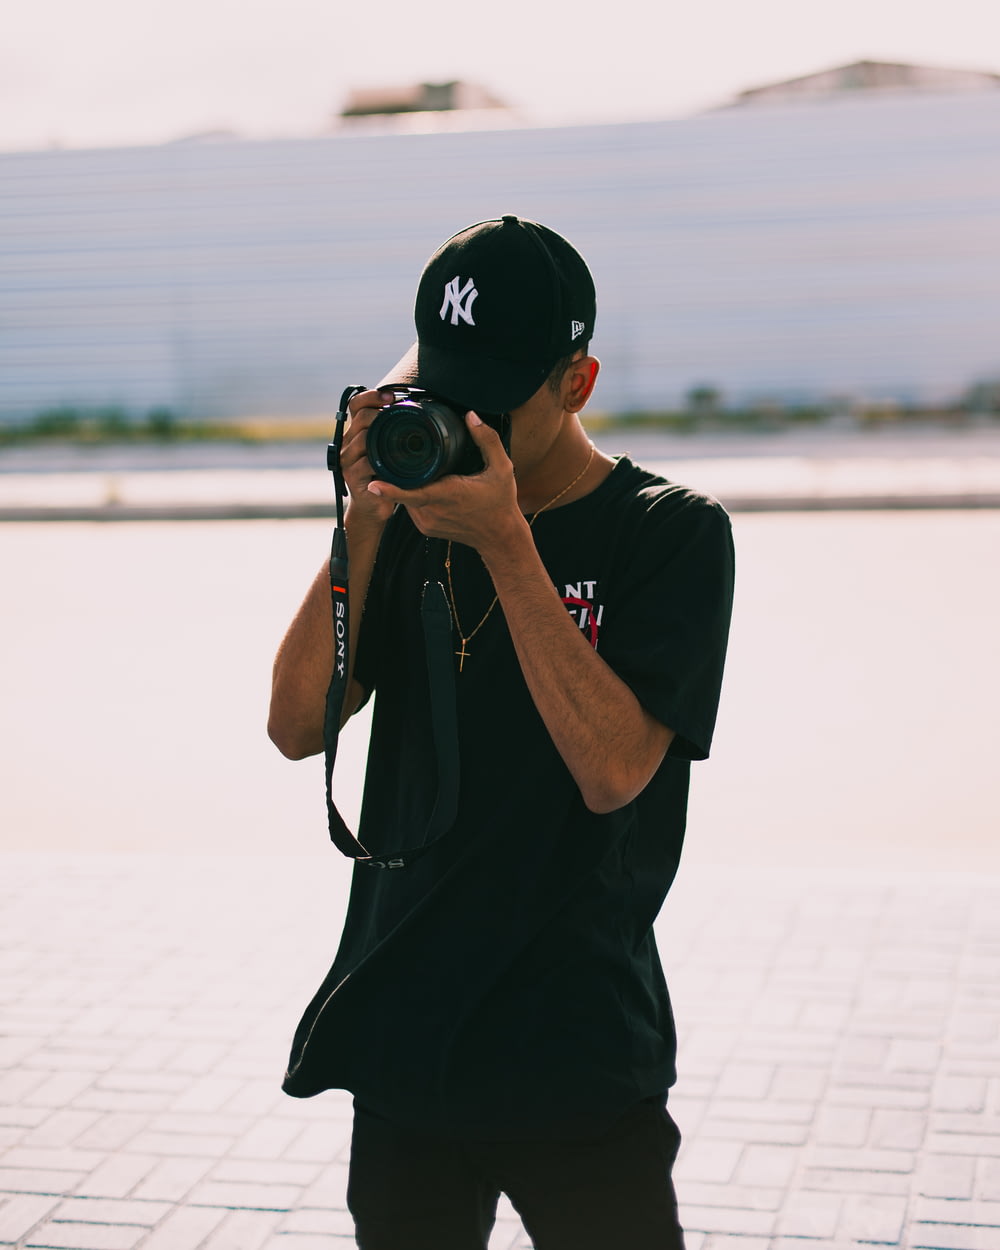 homem na camiseta preta segurando a câmera dslr preta